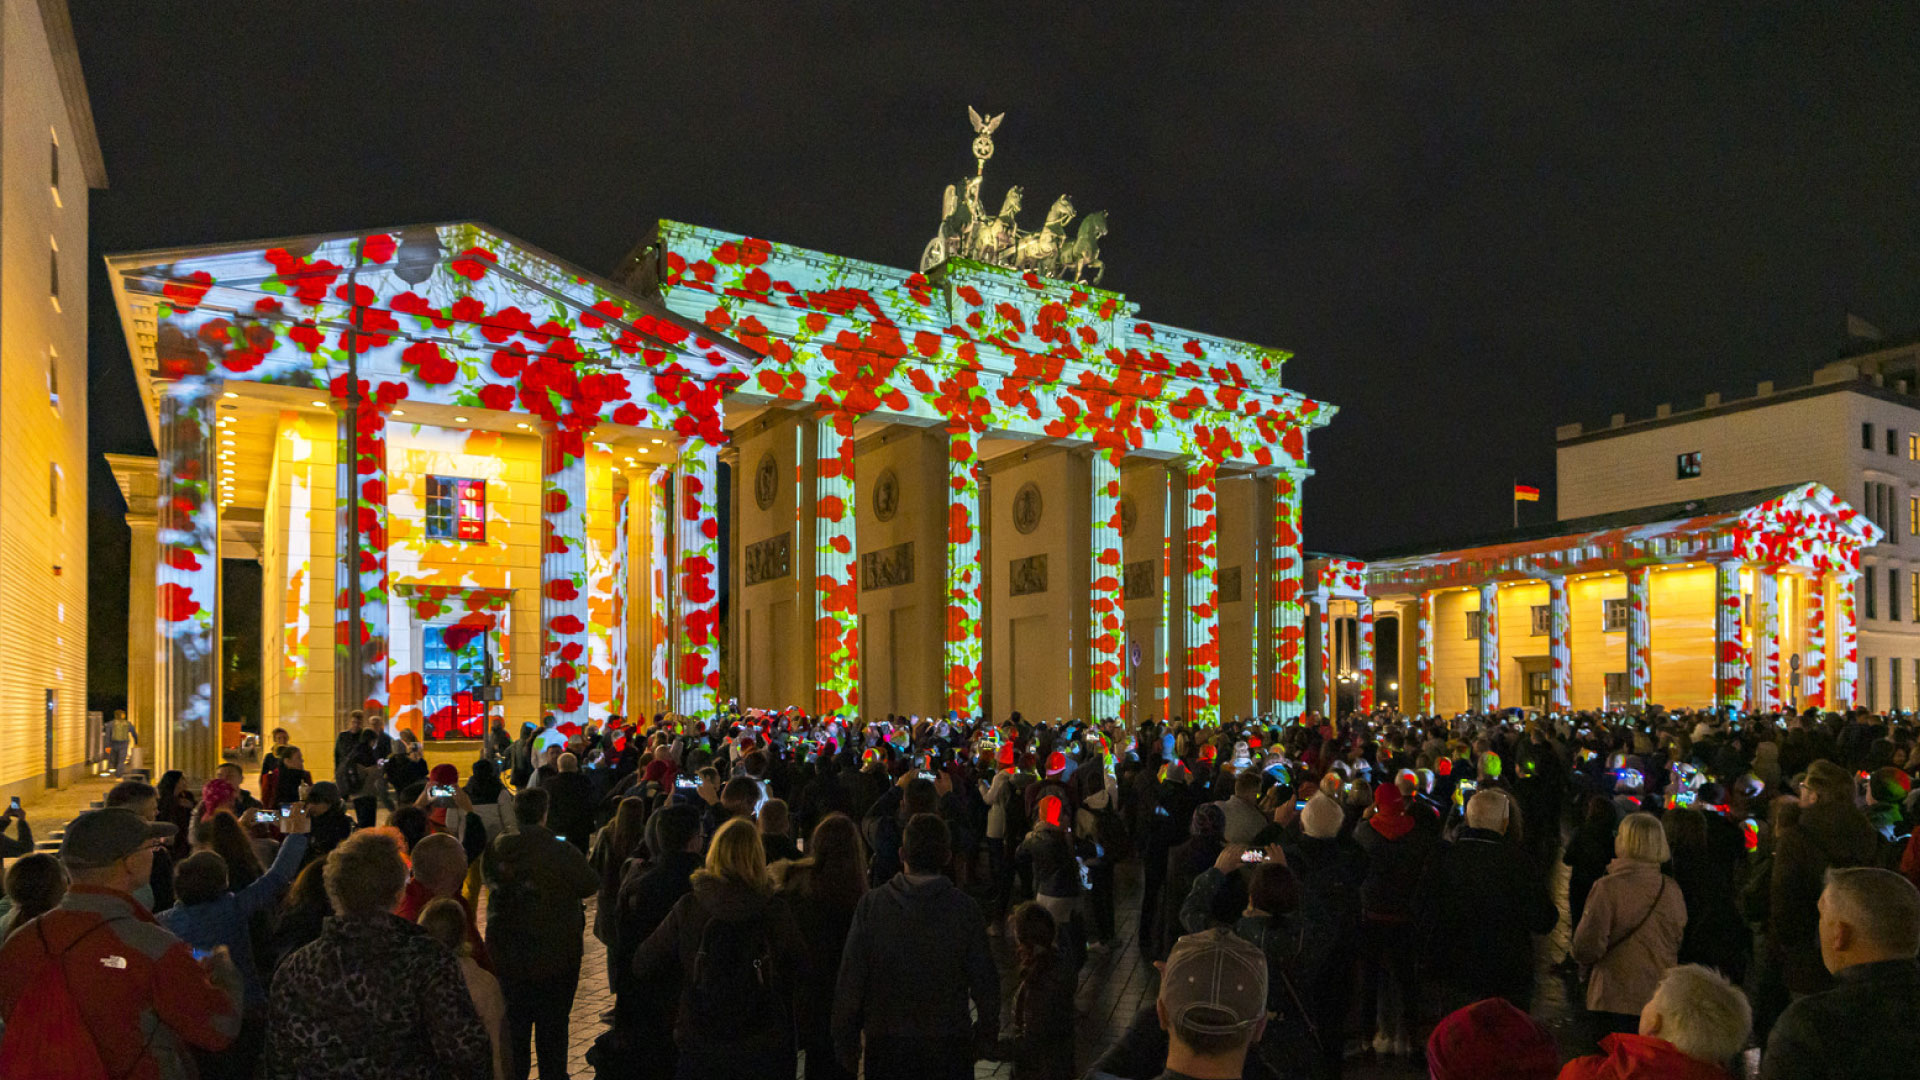 PRG suministró más de 20 proyectores para la realización de estas iluminaciones en el Festival de las Luces de Berlín en diversos lugares.